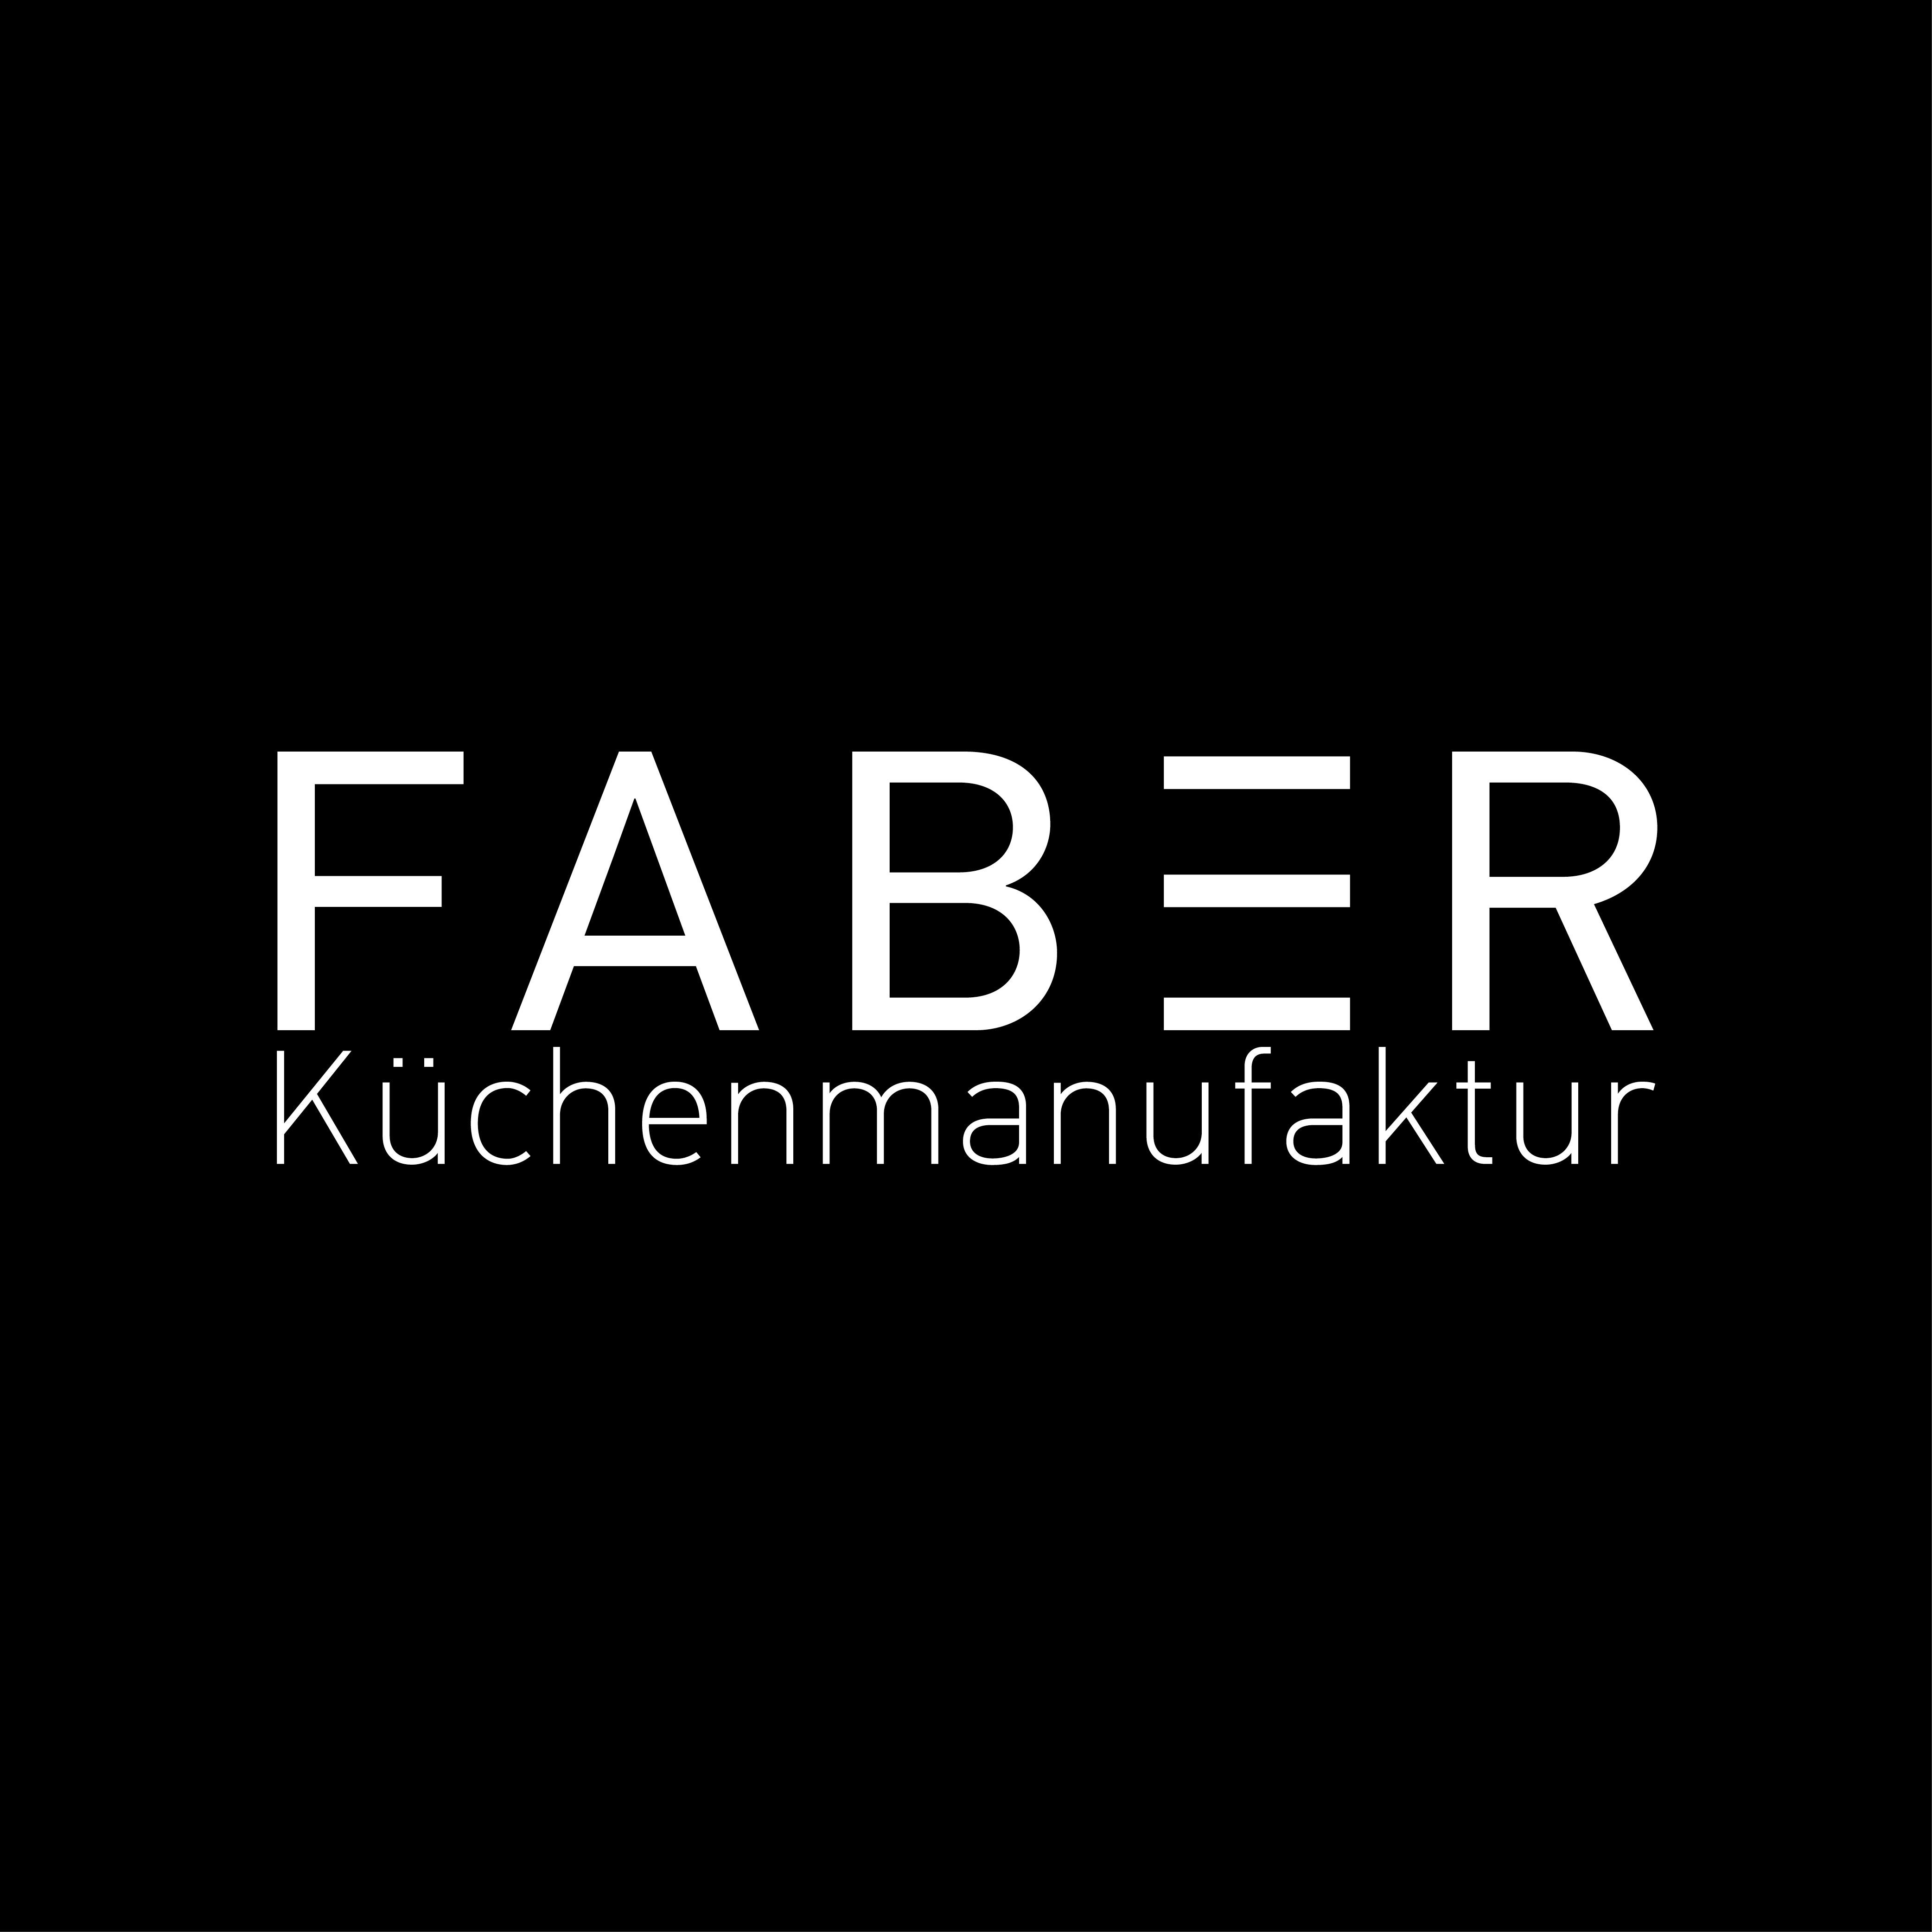 FABER Küchenmanufaktur GmbH  